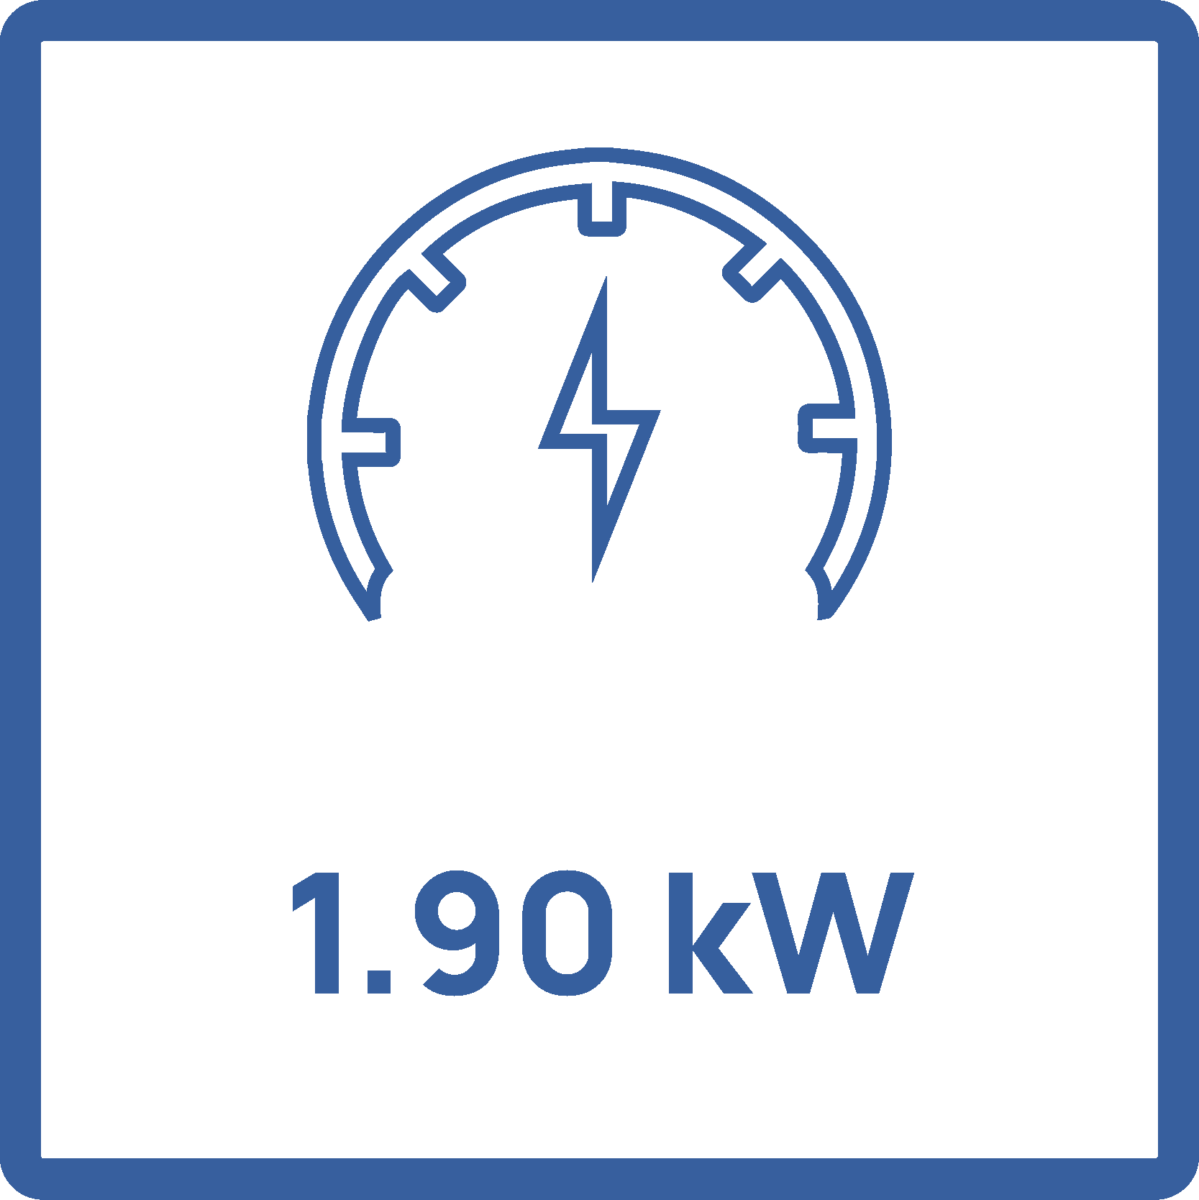 1.90 kW